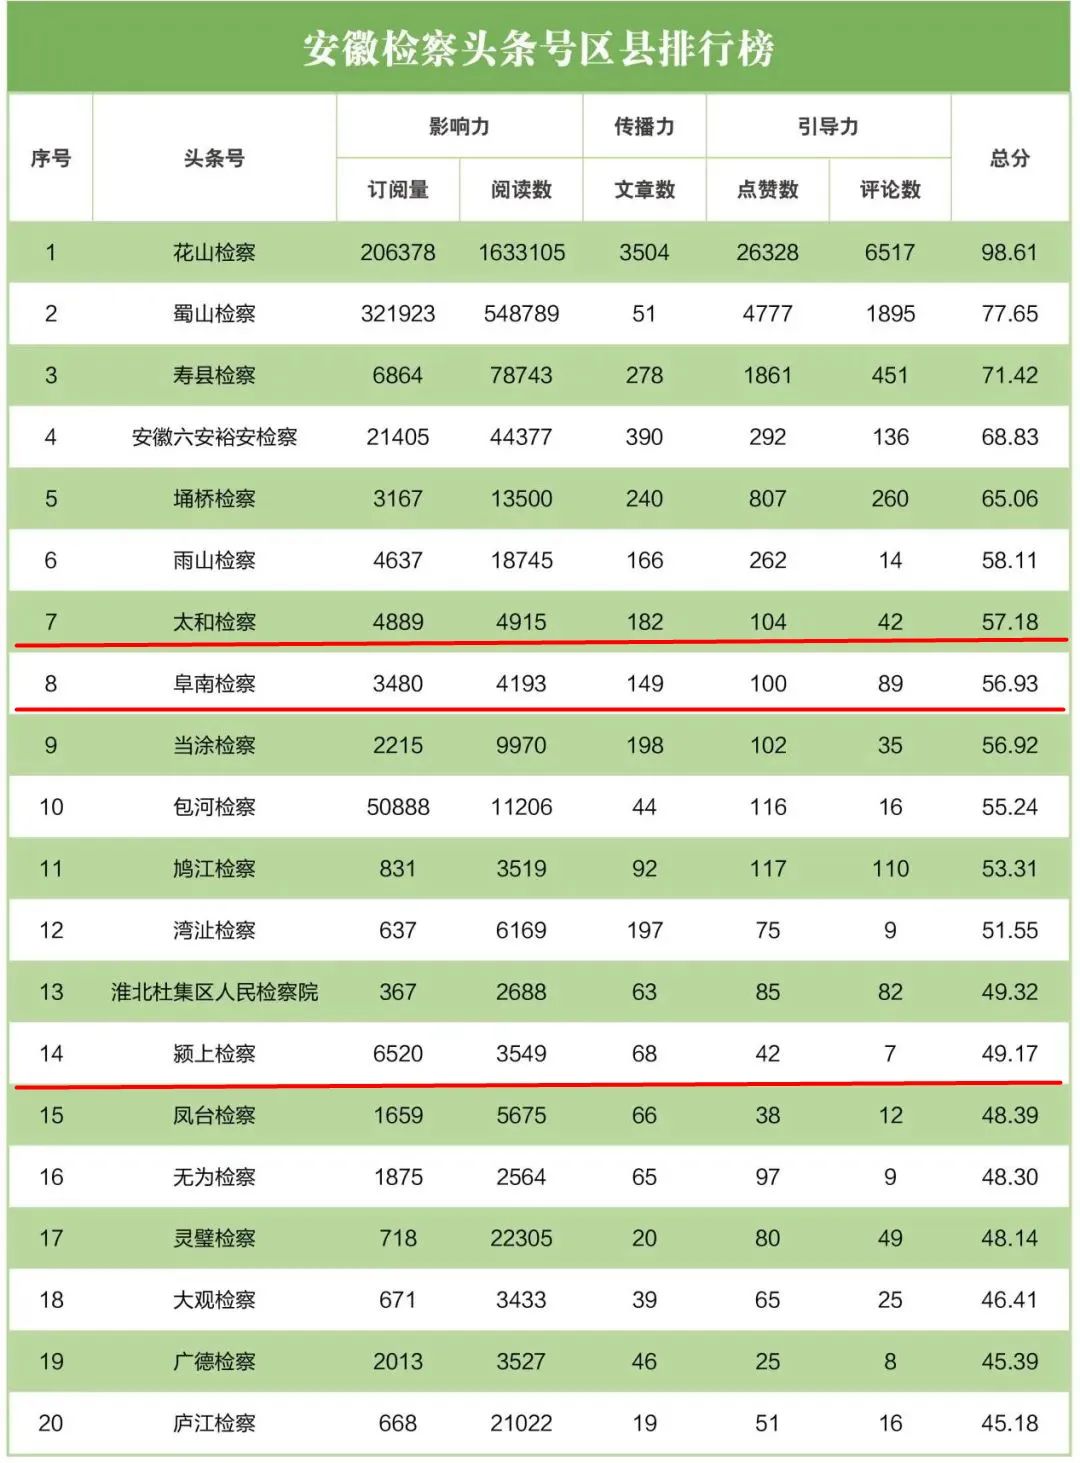 【榜单】2022年4月“互联网+检察”指数安徽省排行榜